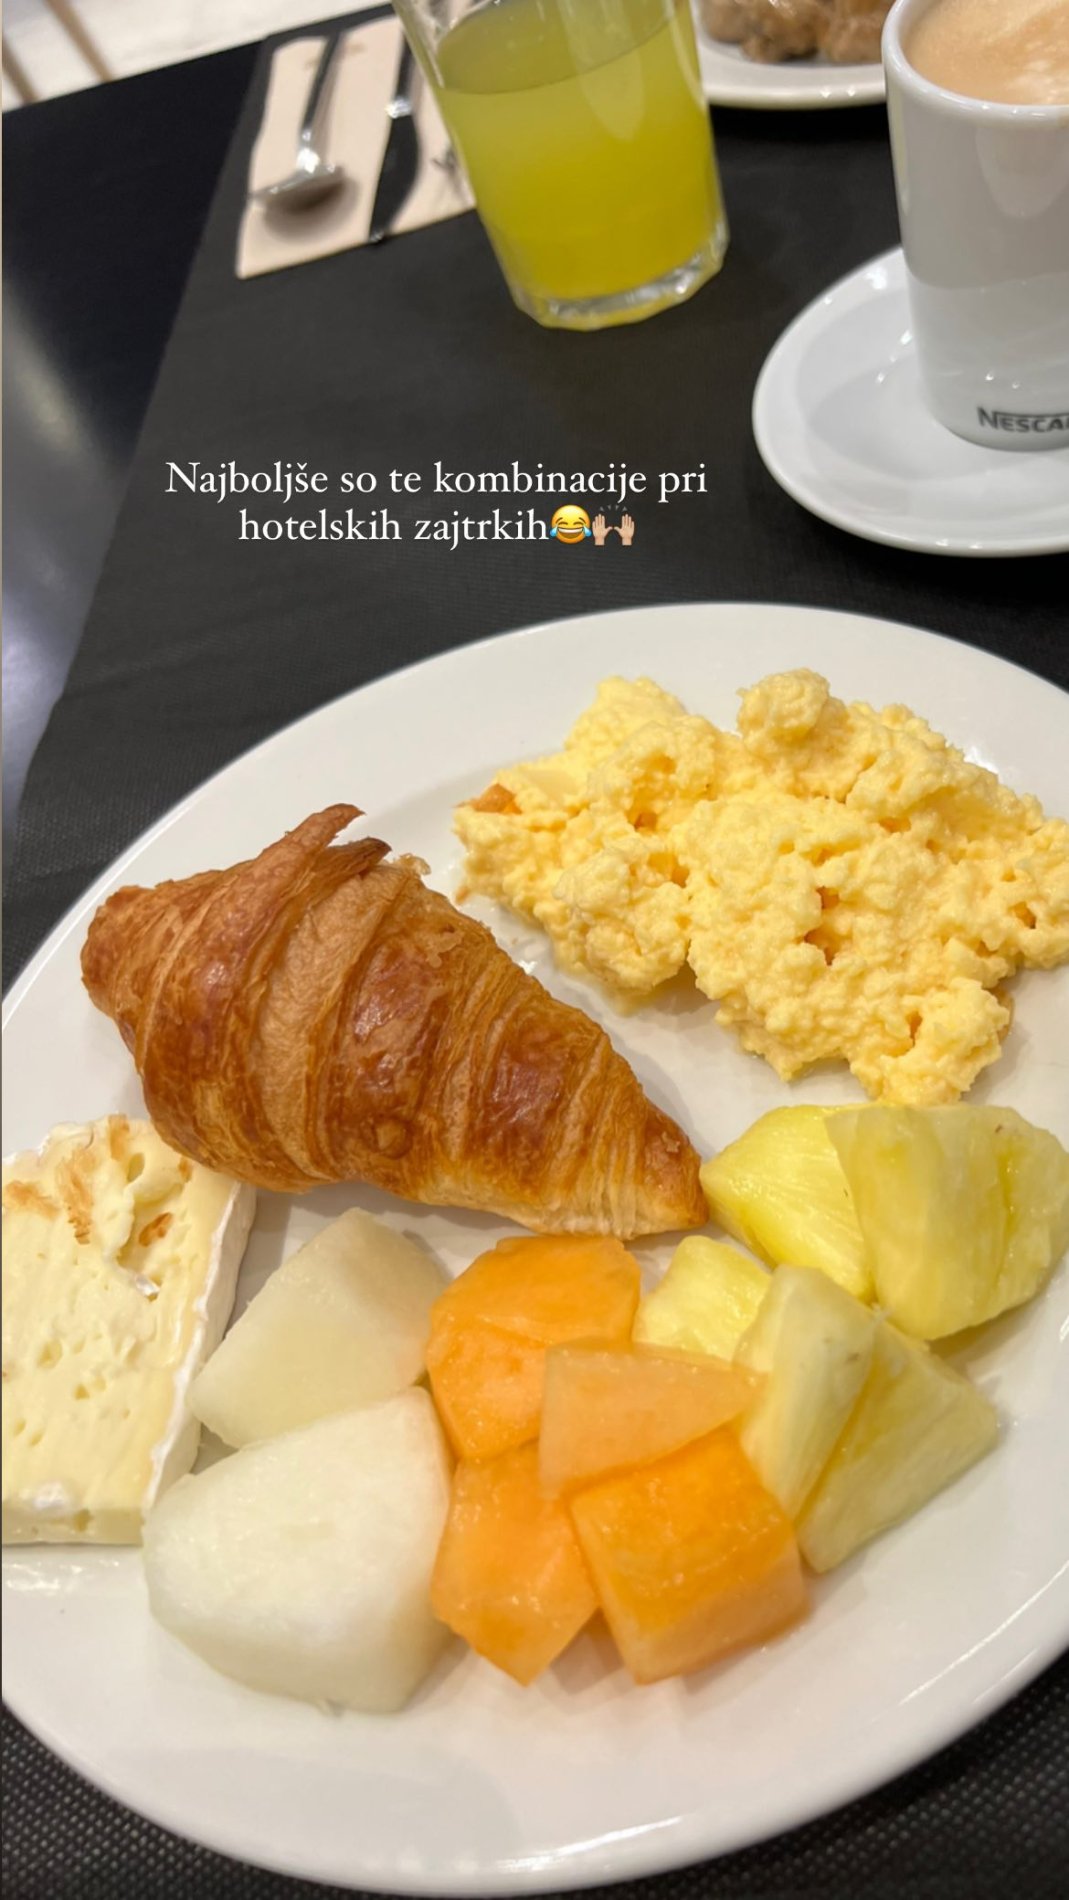 Prvi zajtrk v Barceloni. Vir: Instagram